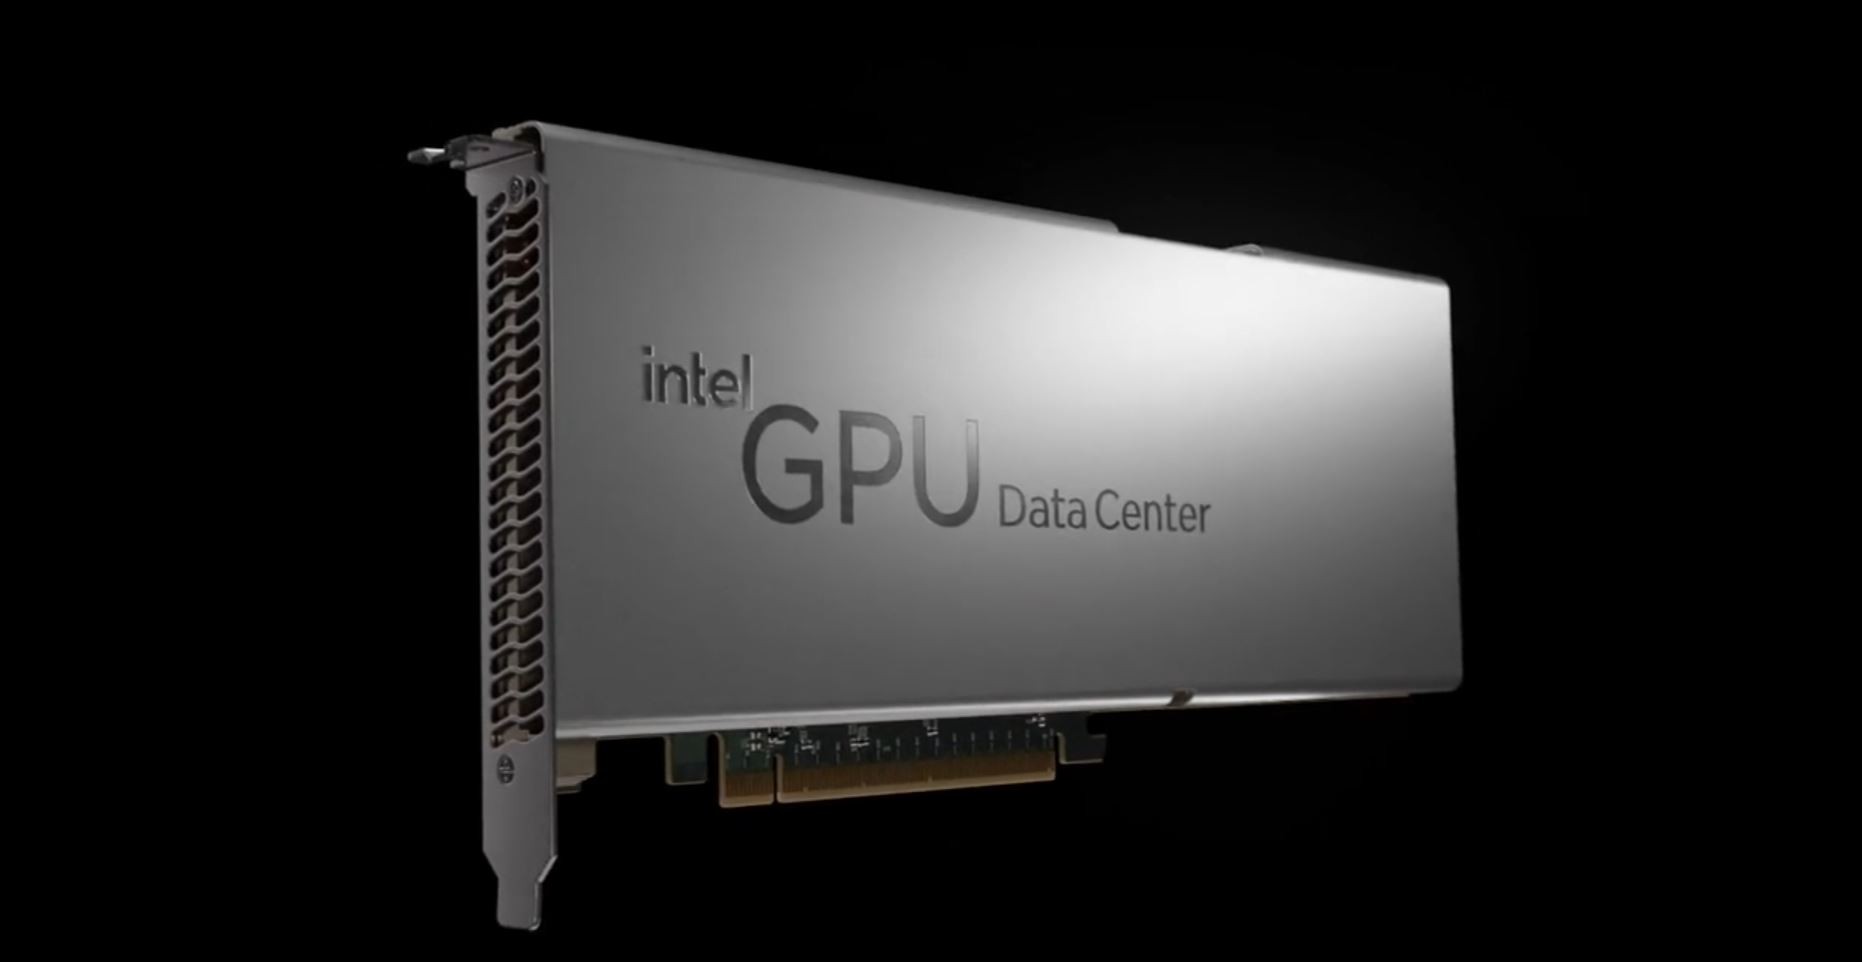 Intel giới thiệu GPU Trung tâm dữ liệu Arctic Sound-M